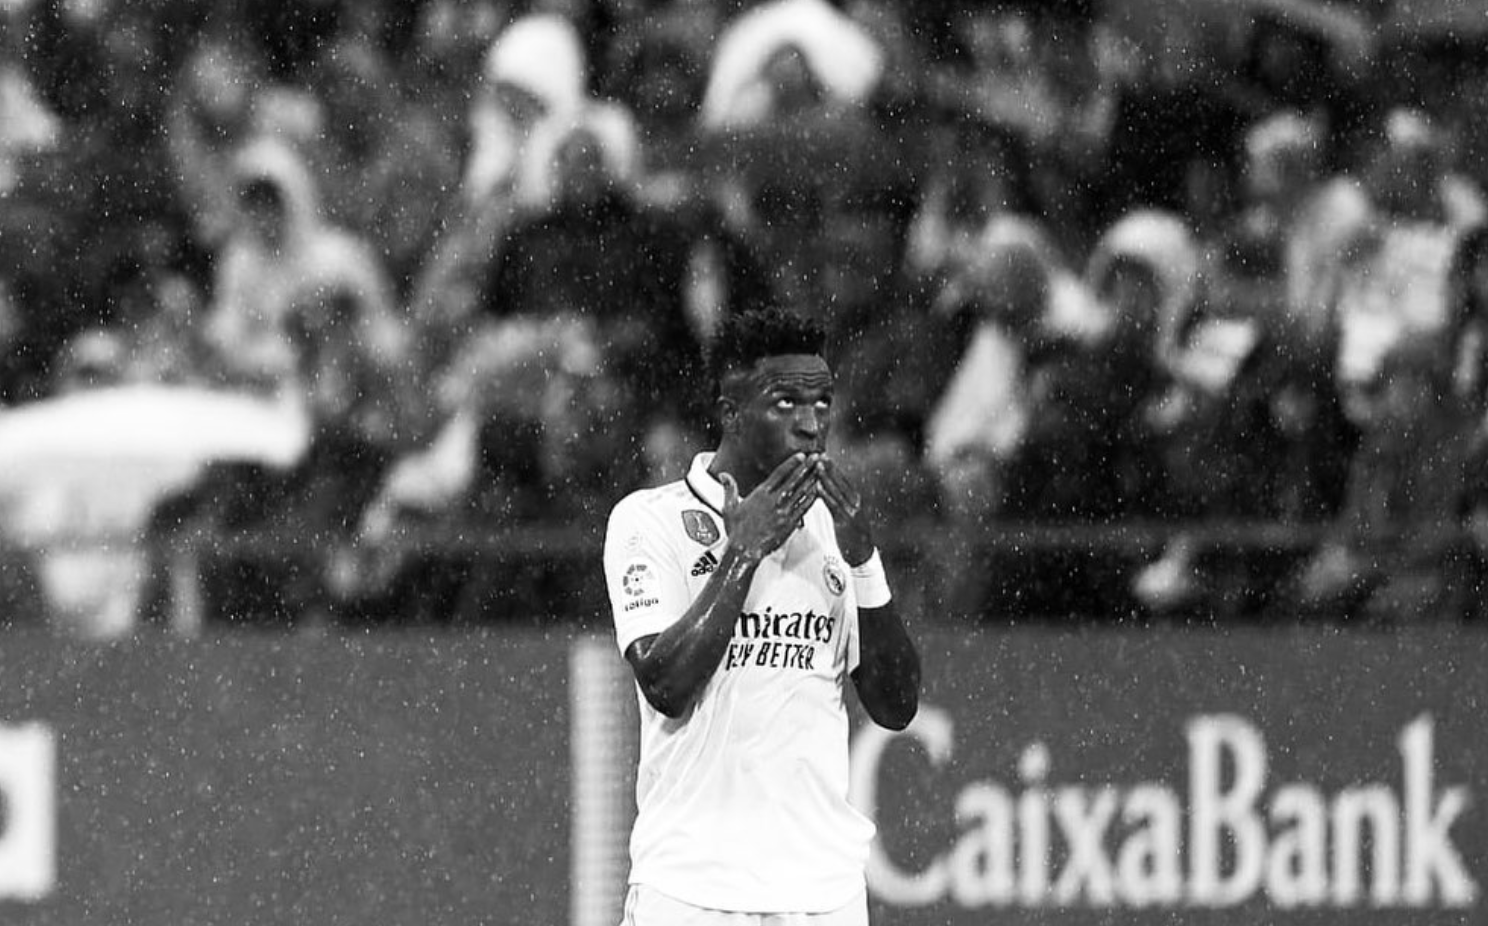 Justiça espanhola abre investigação a insultos racistas contra o jogador de futebol Vinícius Júnior